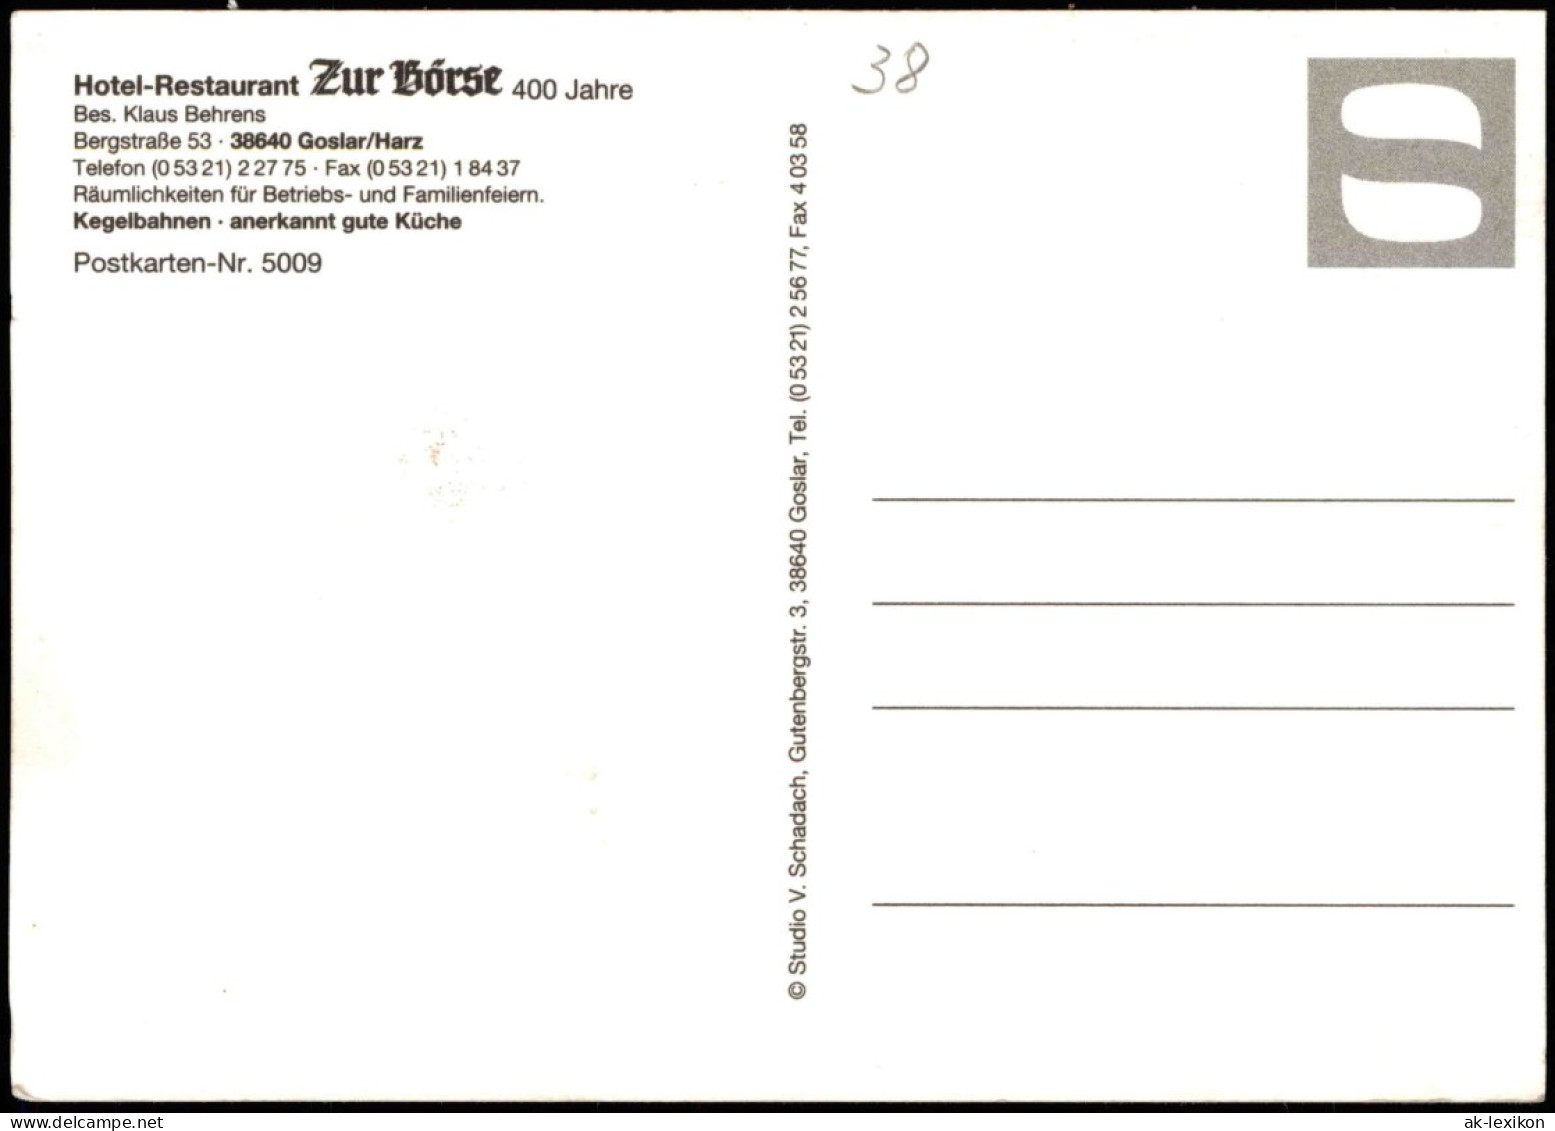 Goslar Hotel-Restaurant Zur Börse (Mehrbildkarte) Bes. Klaus Behrens 1980 - Goslar